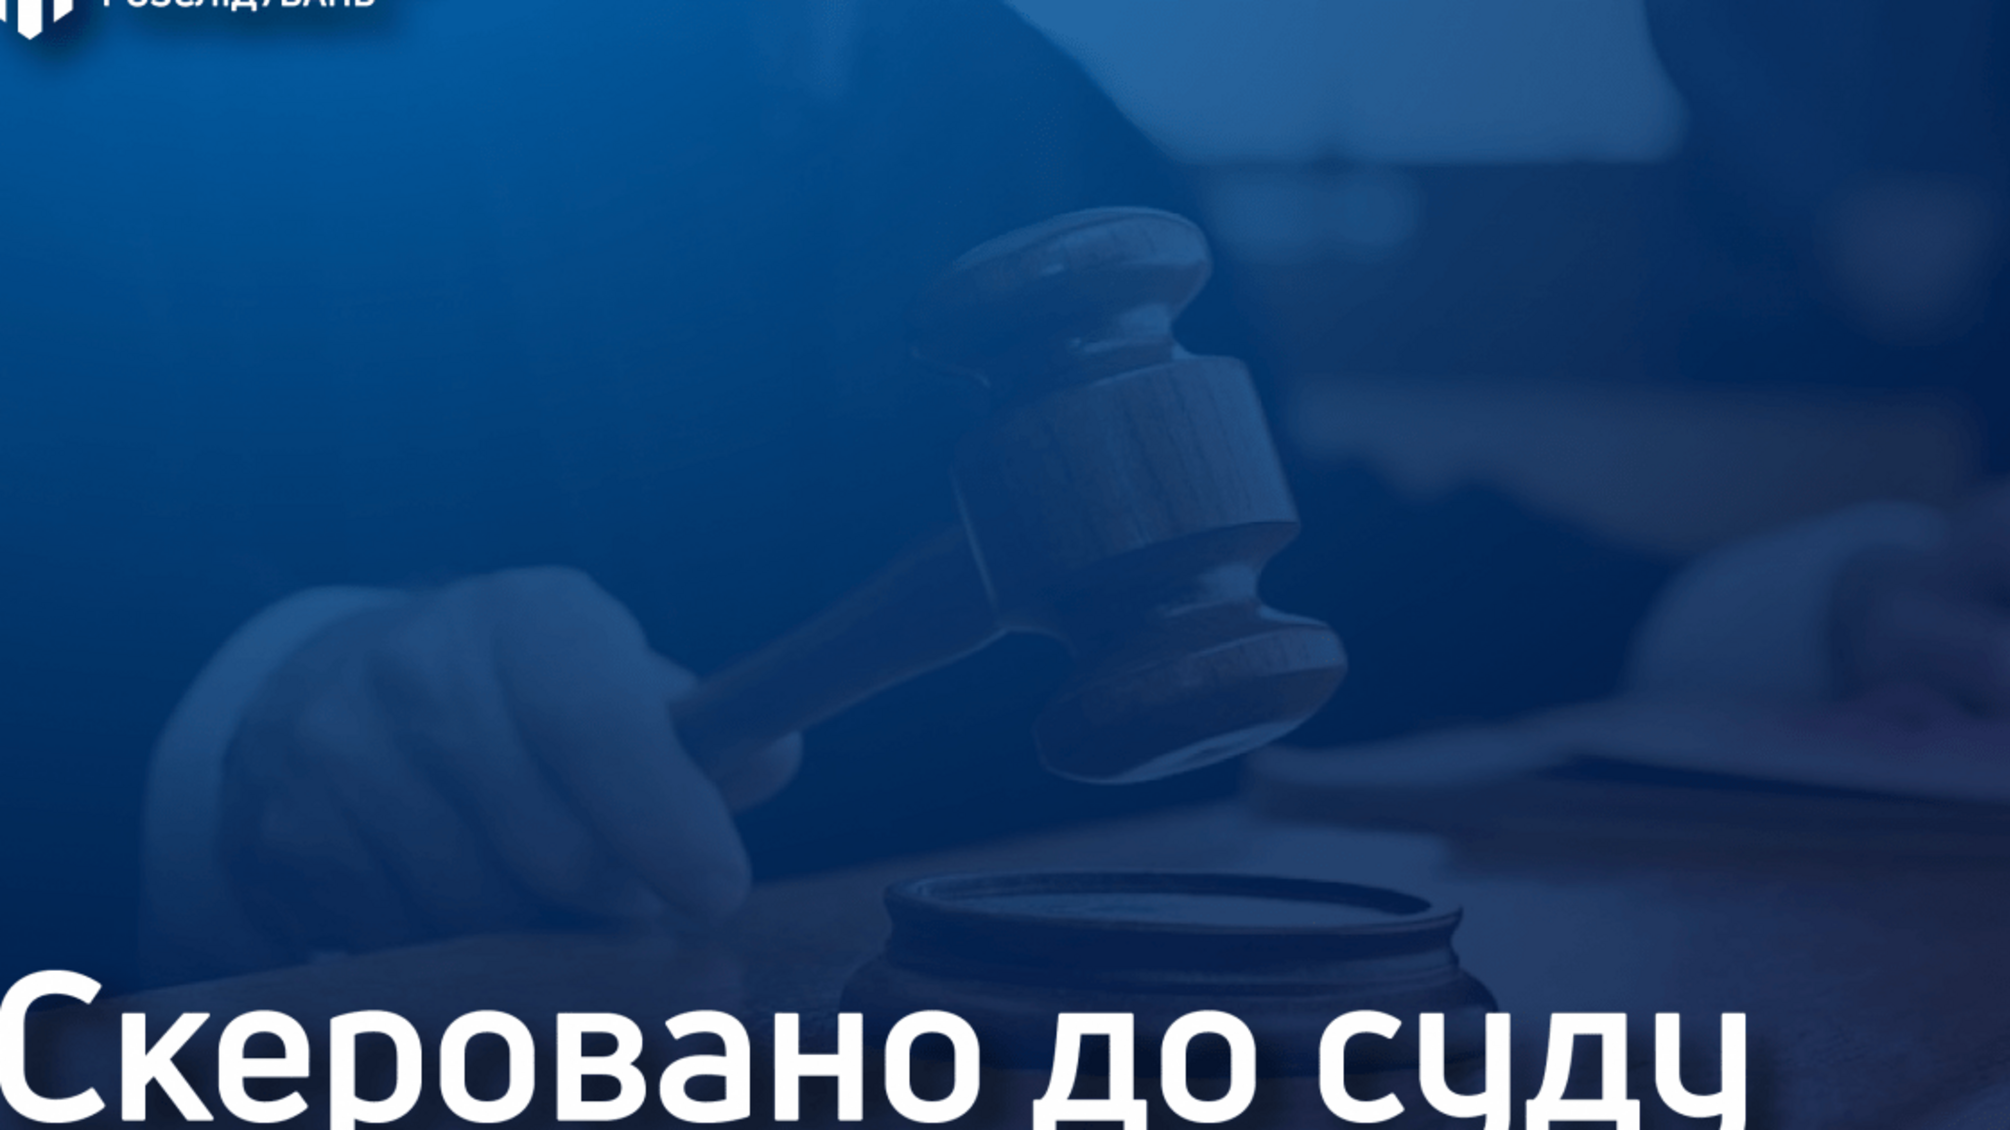 250 тисяч гривень за закриття кримінального провадження – керівник слідчого підрозділу поліції Дніпропетровщини постане перед судом